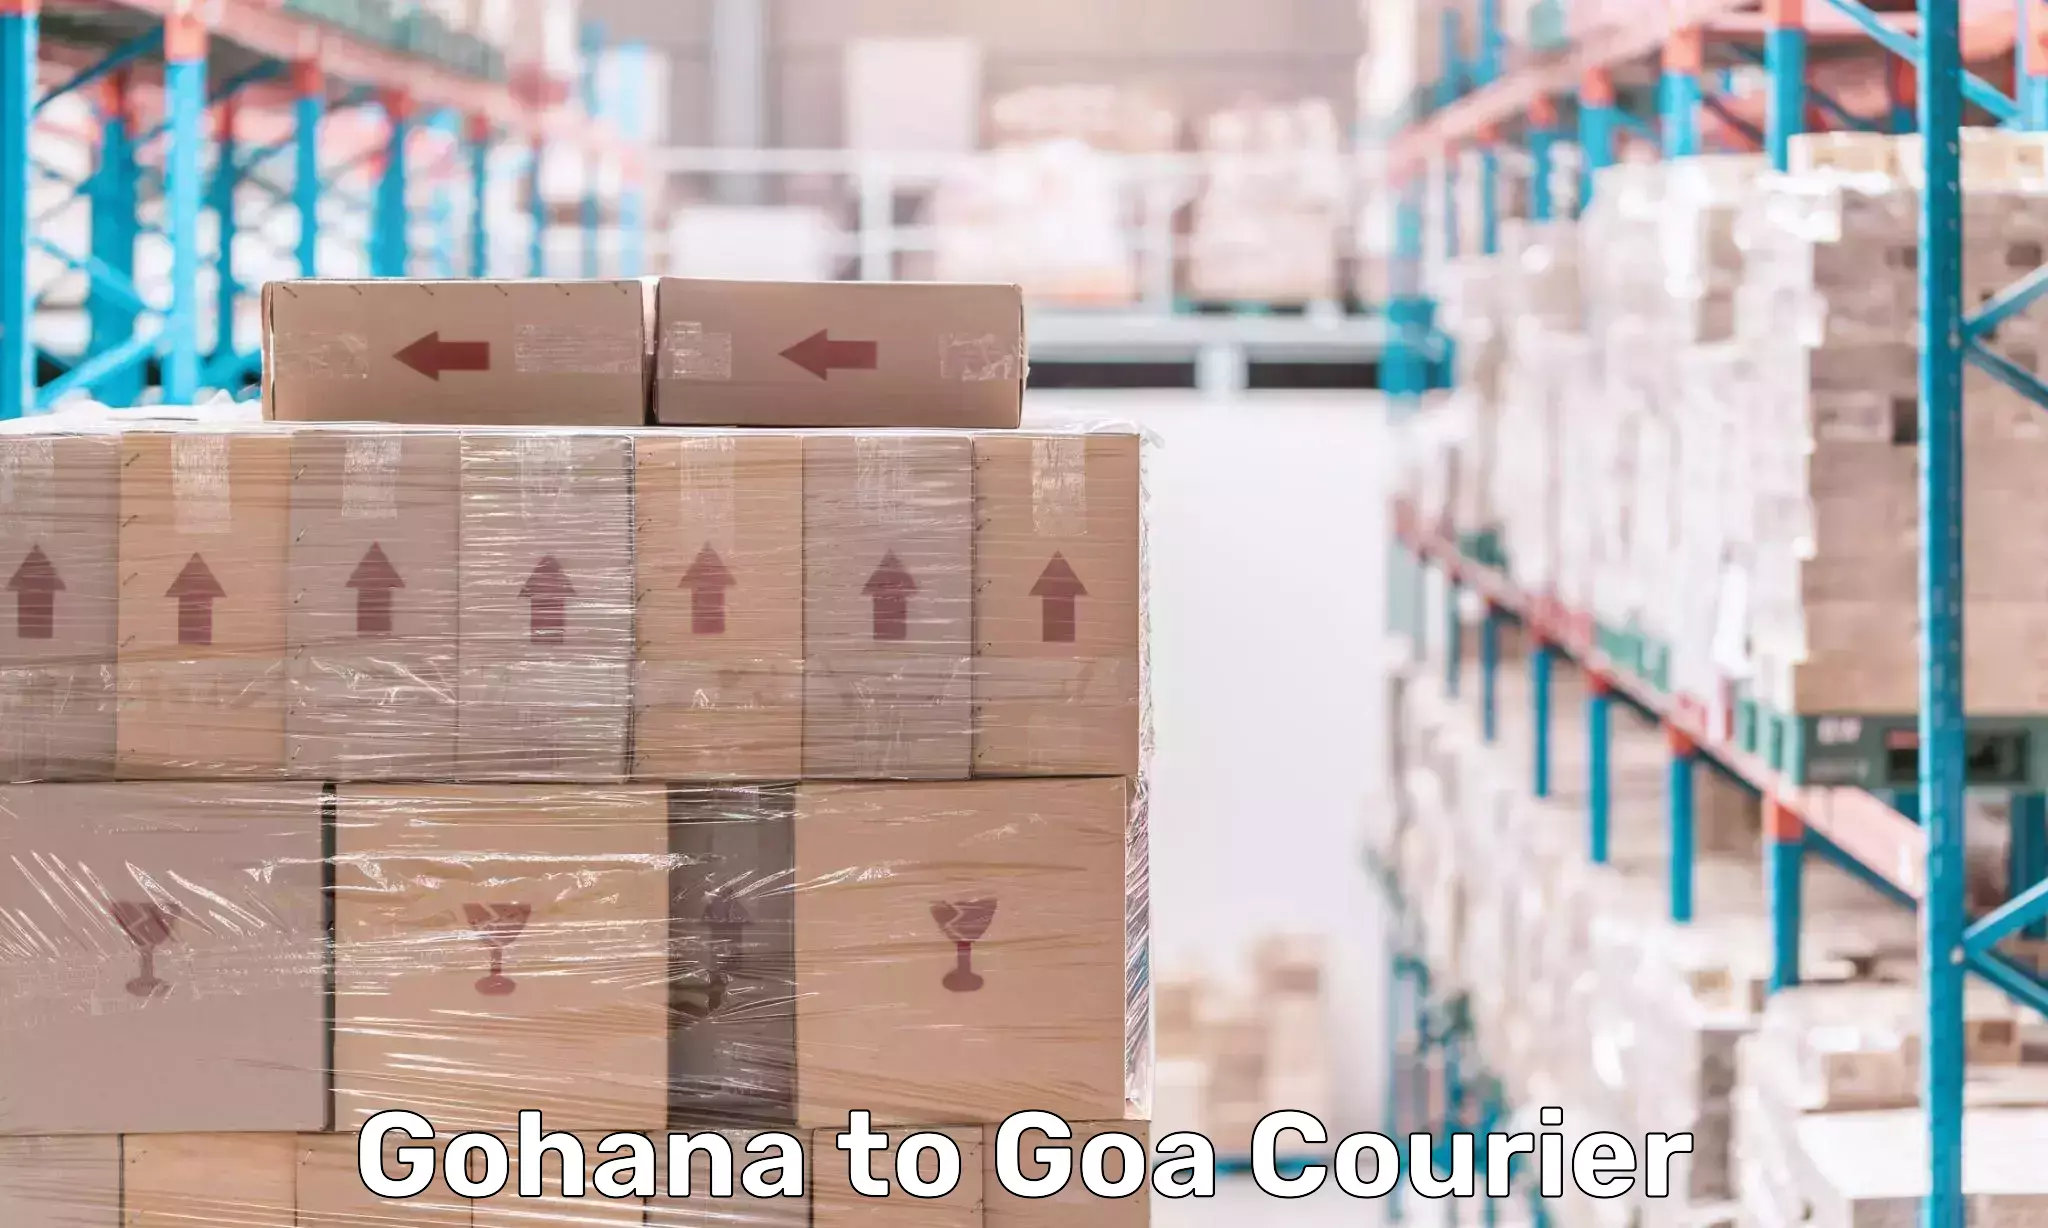 Efficient courier operations Gohana to Ponda